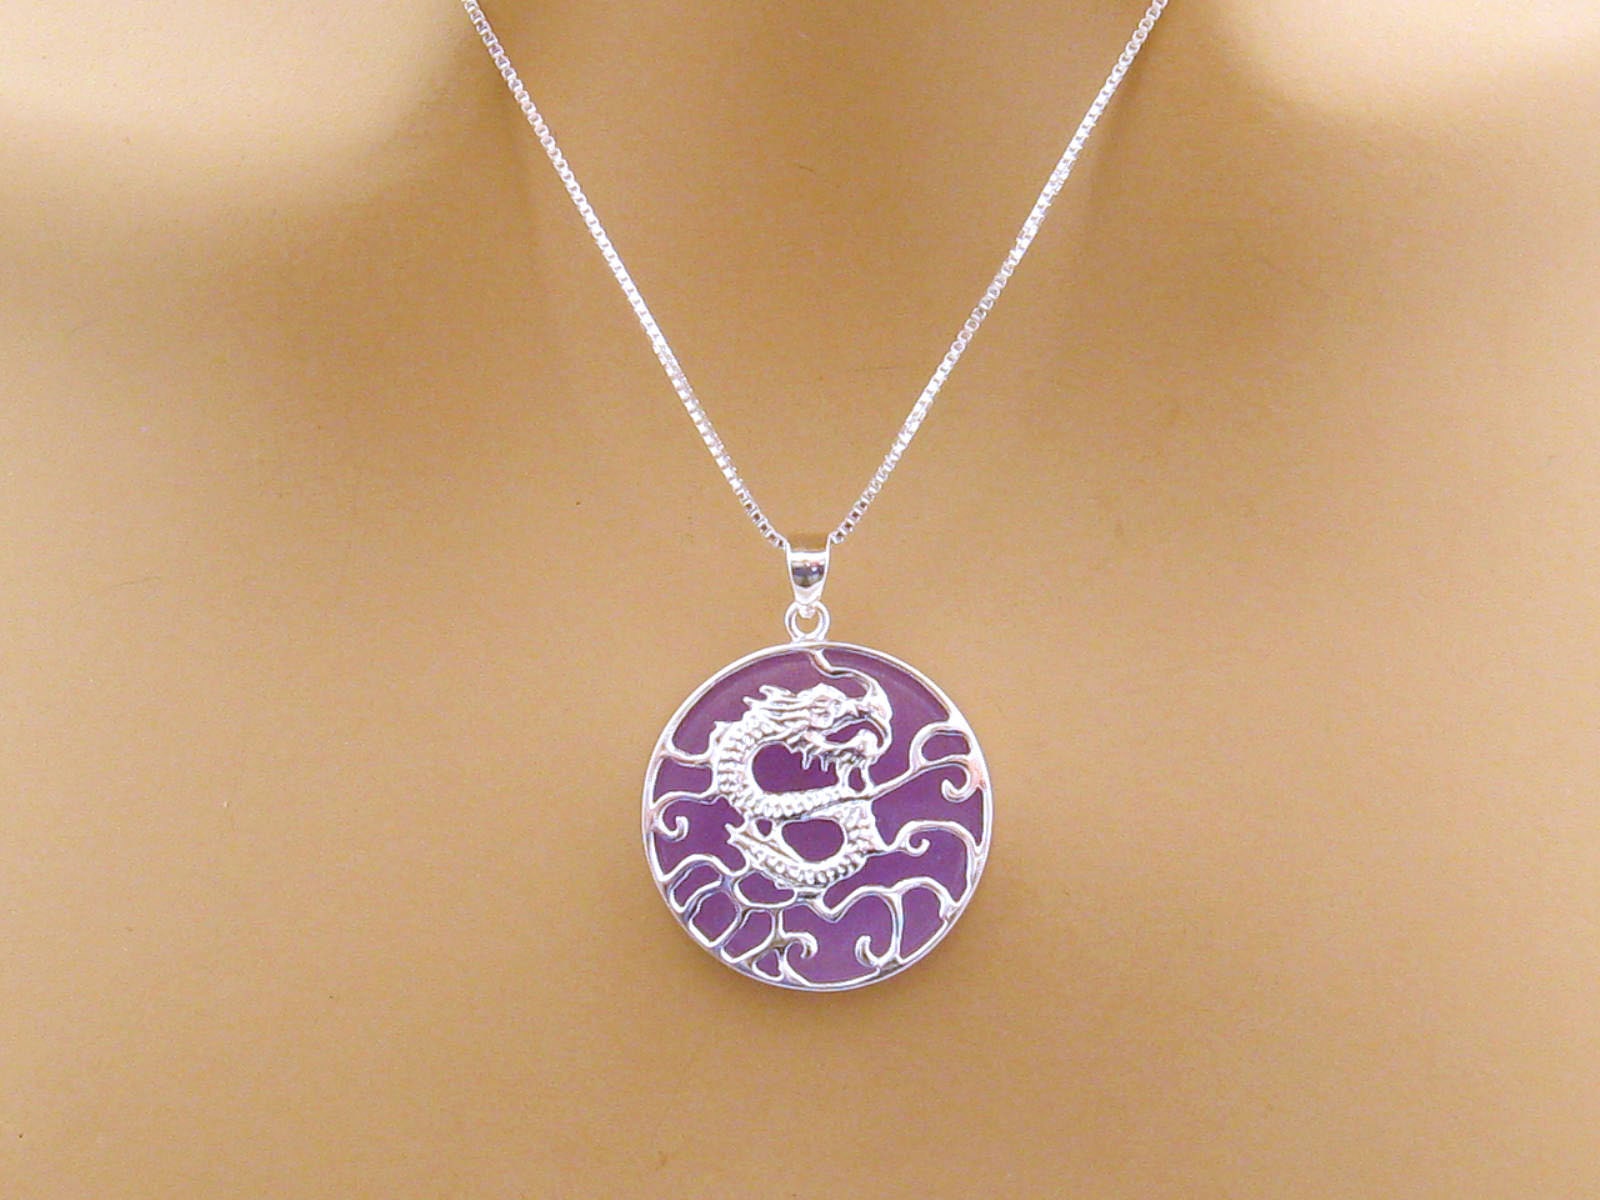 NL234 Lavender Jade Necklace Sterling Silver 